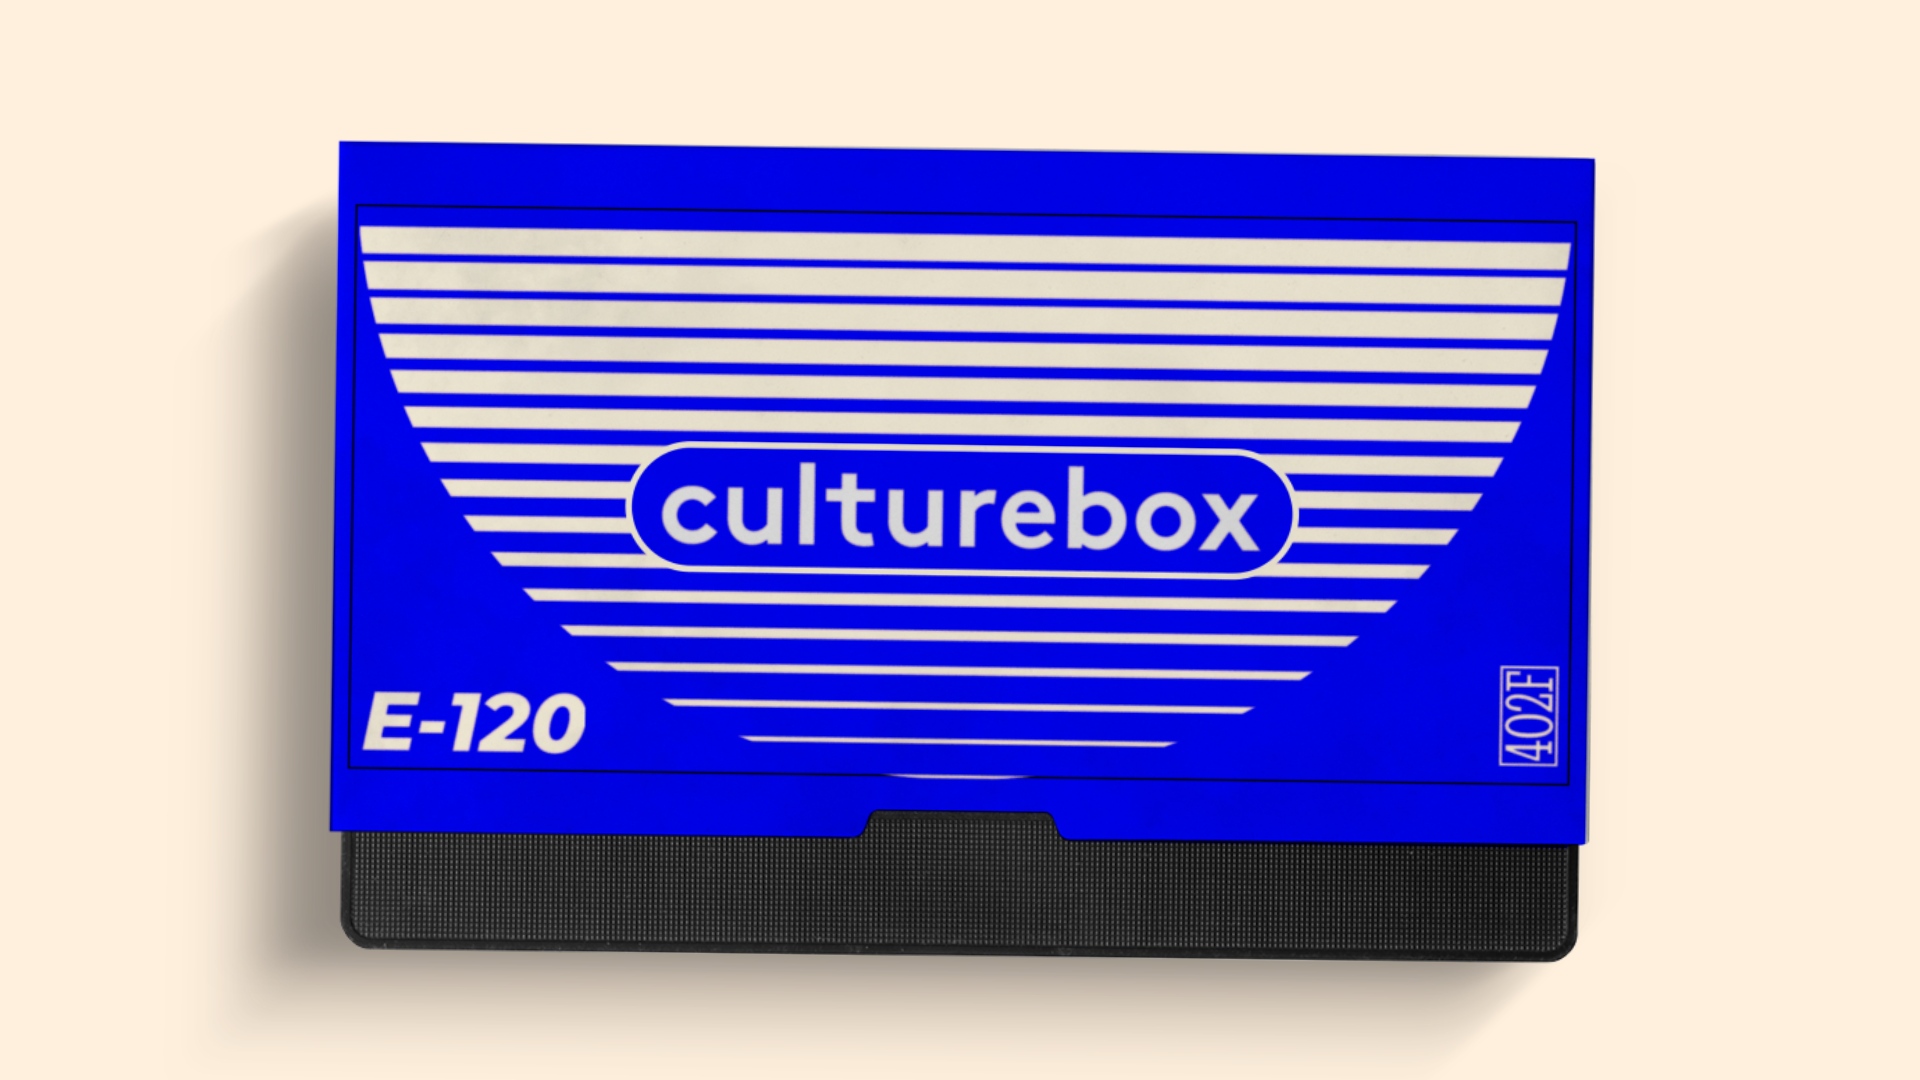 Fausse jaquette de vhs style années 90 avec le logo culturebox